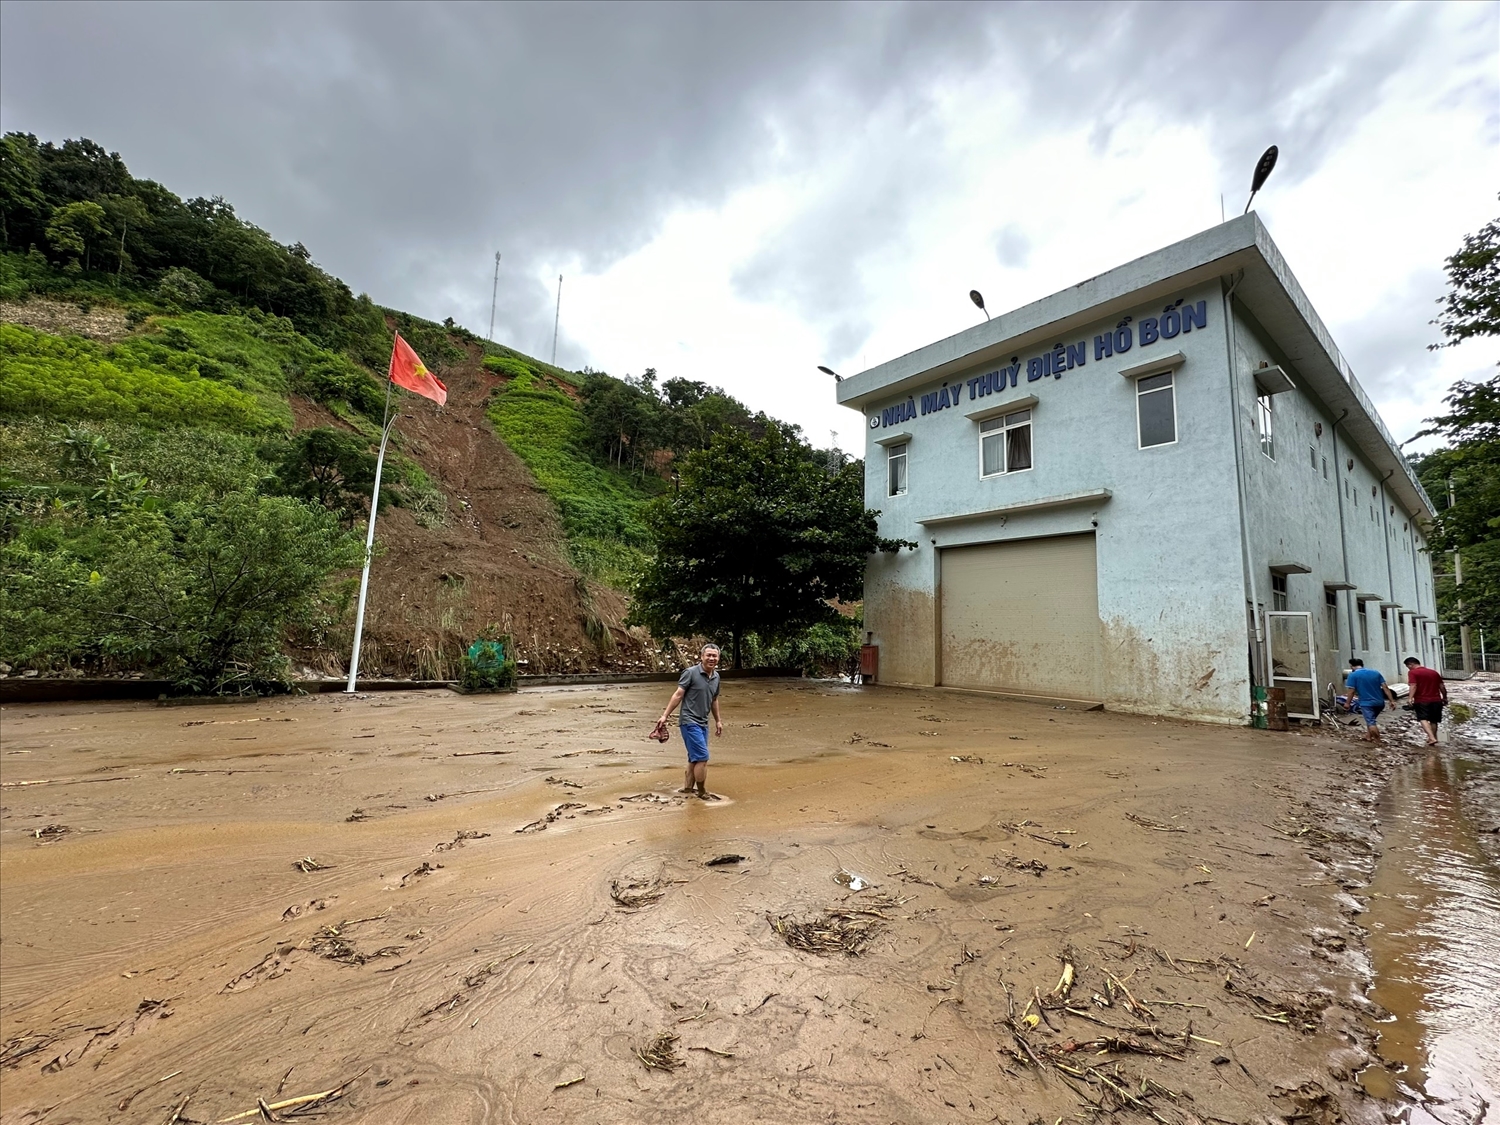 Nhà máy thủy điện Hồ Bốn (Mù Cang Chải, Yên Bái) ngập trong bùn đất, cán bộ quản lý nhà máy phải đi bộ vào hiện trường đánh giá thiệt hại